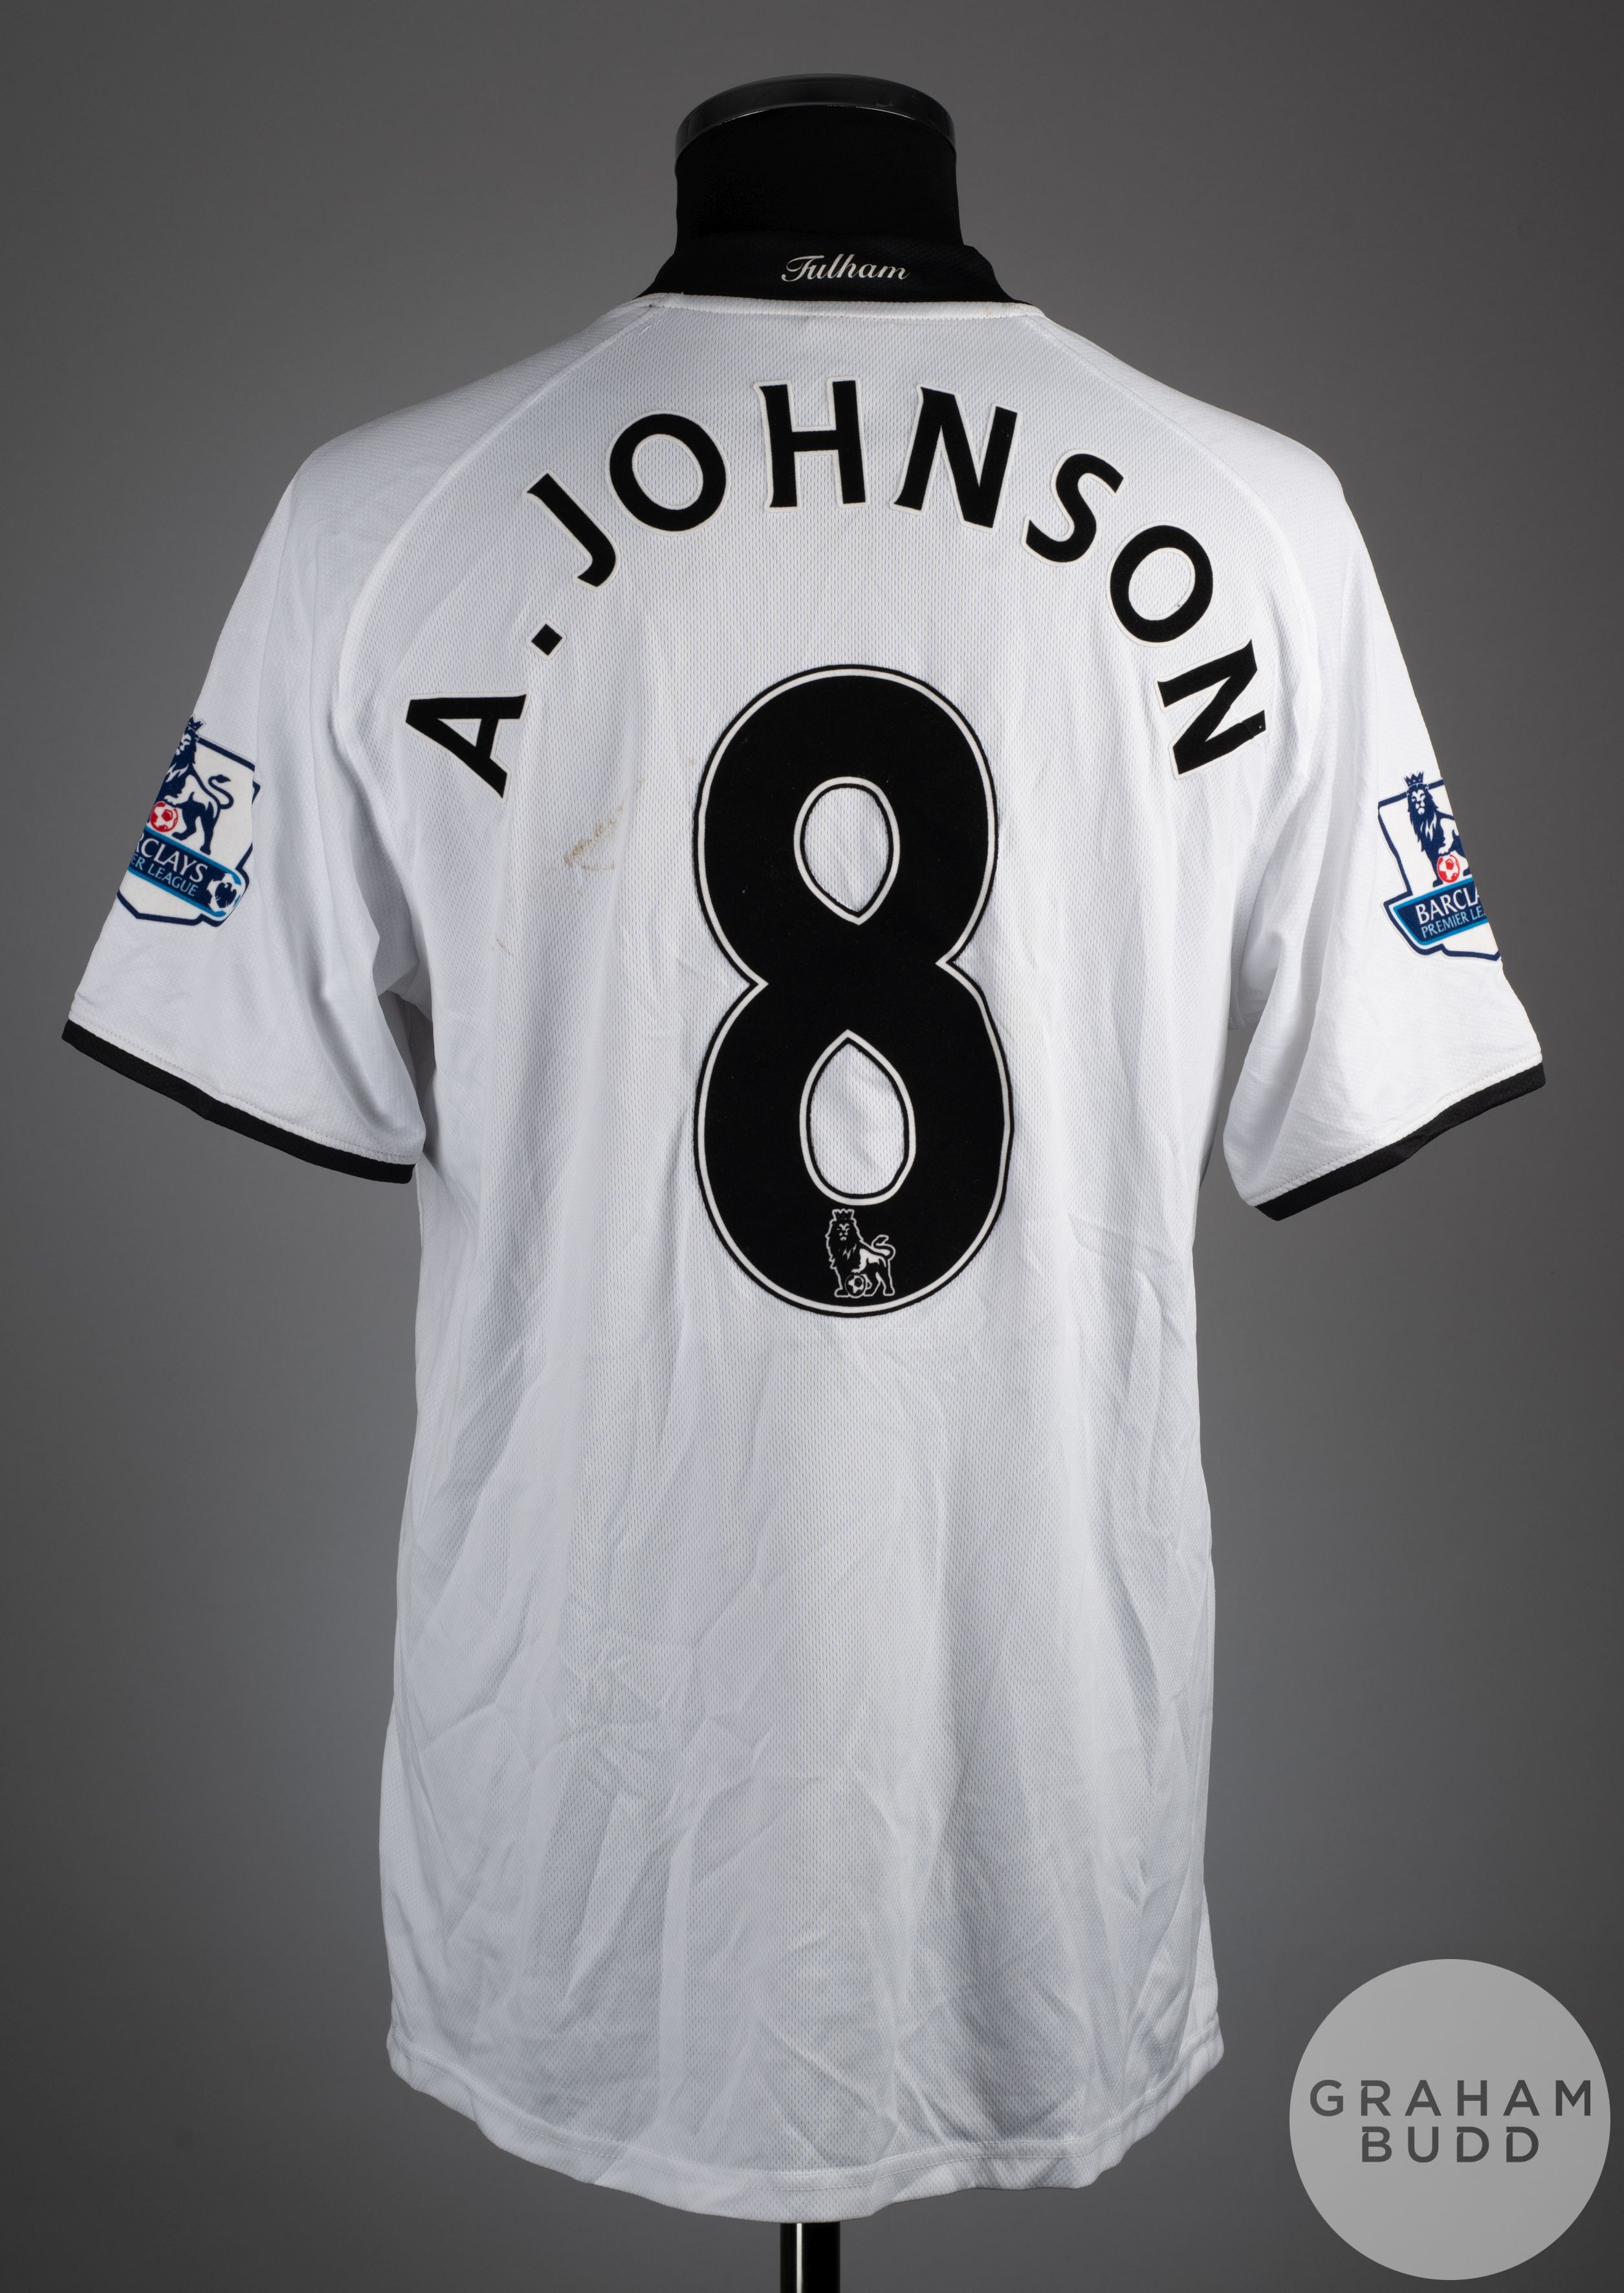 Andrew Johnson white No.8 Fulham short sleeve shirt, 2008-09 - Image 2 of 2